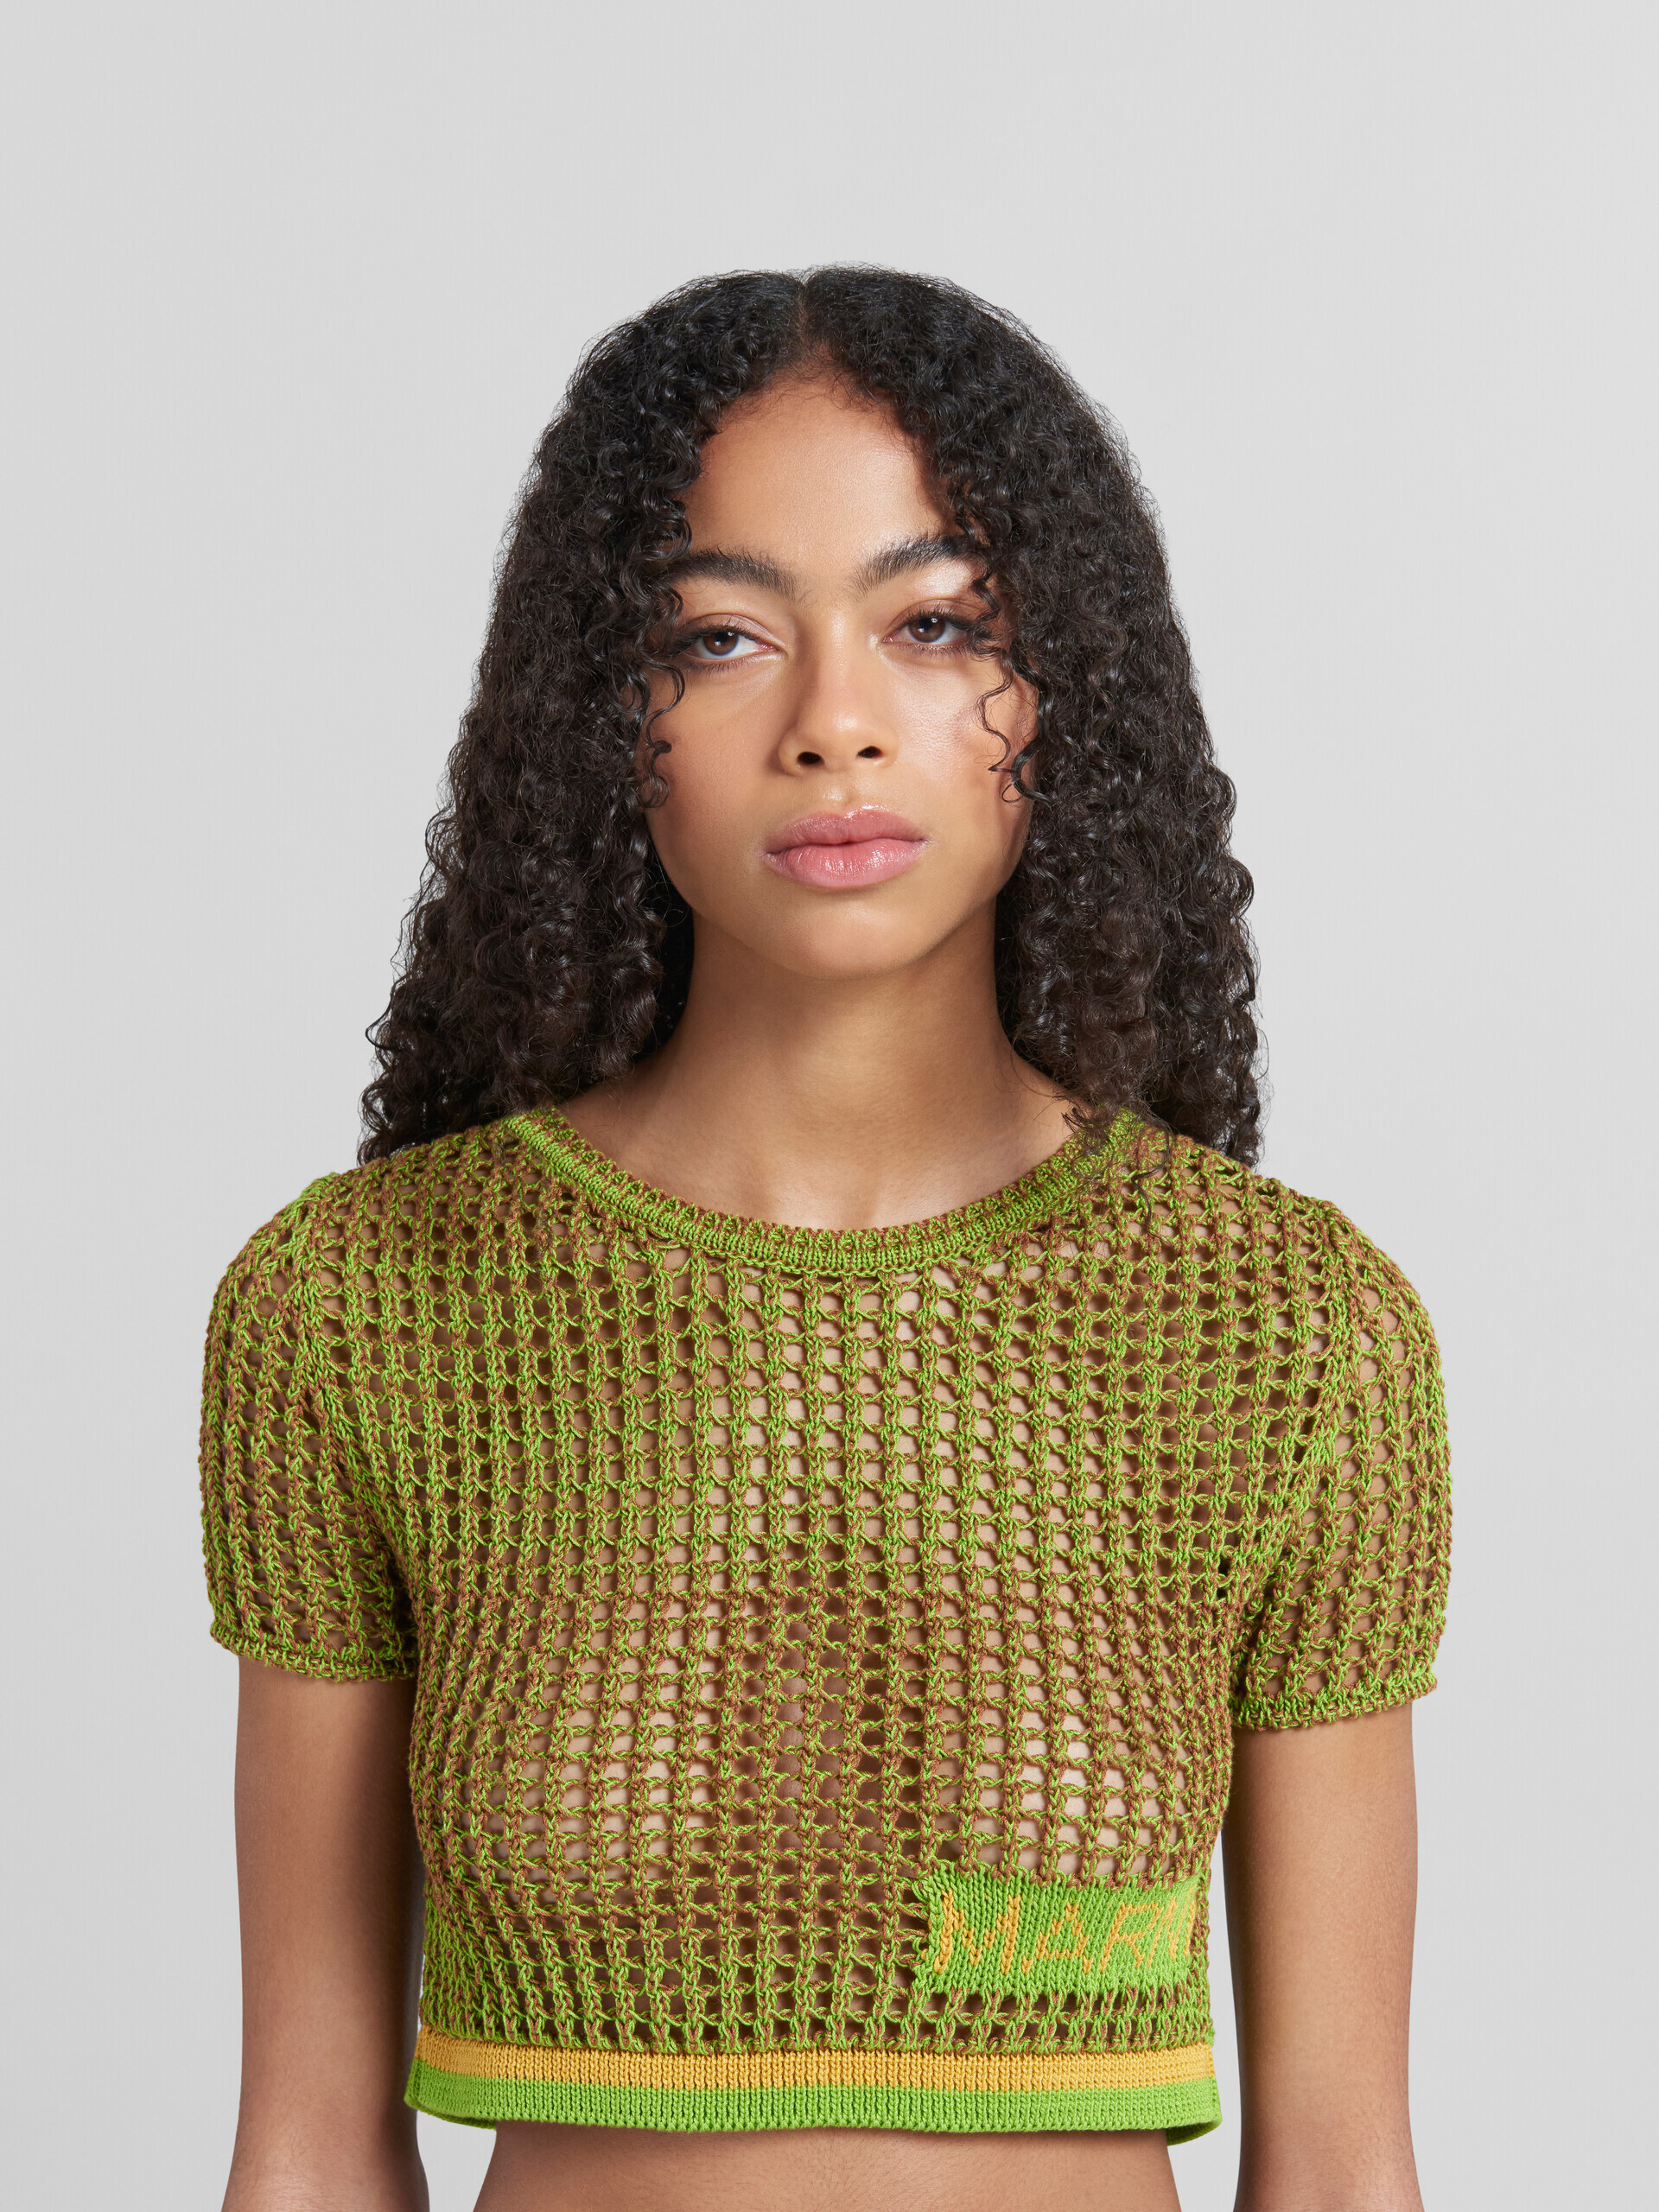 Camiseta de rejilla de algodón orgánico verde - jerseys - Image 4